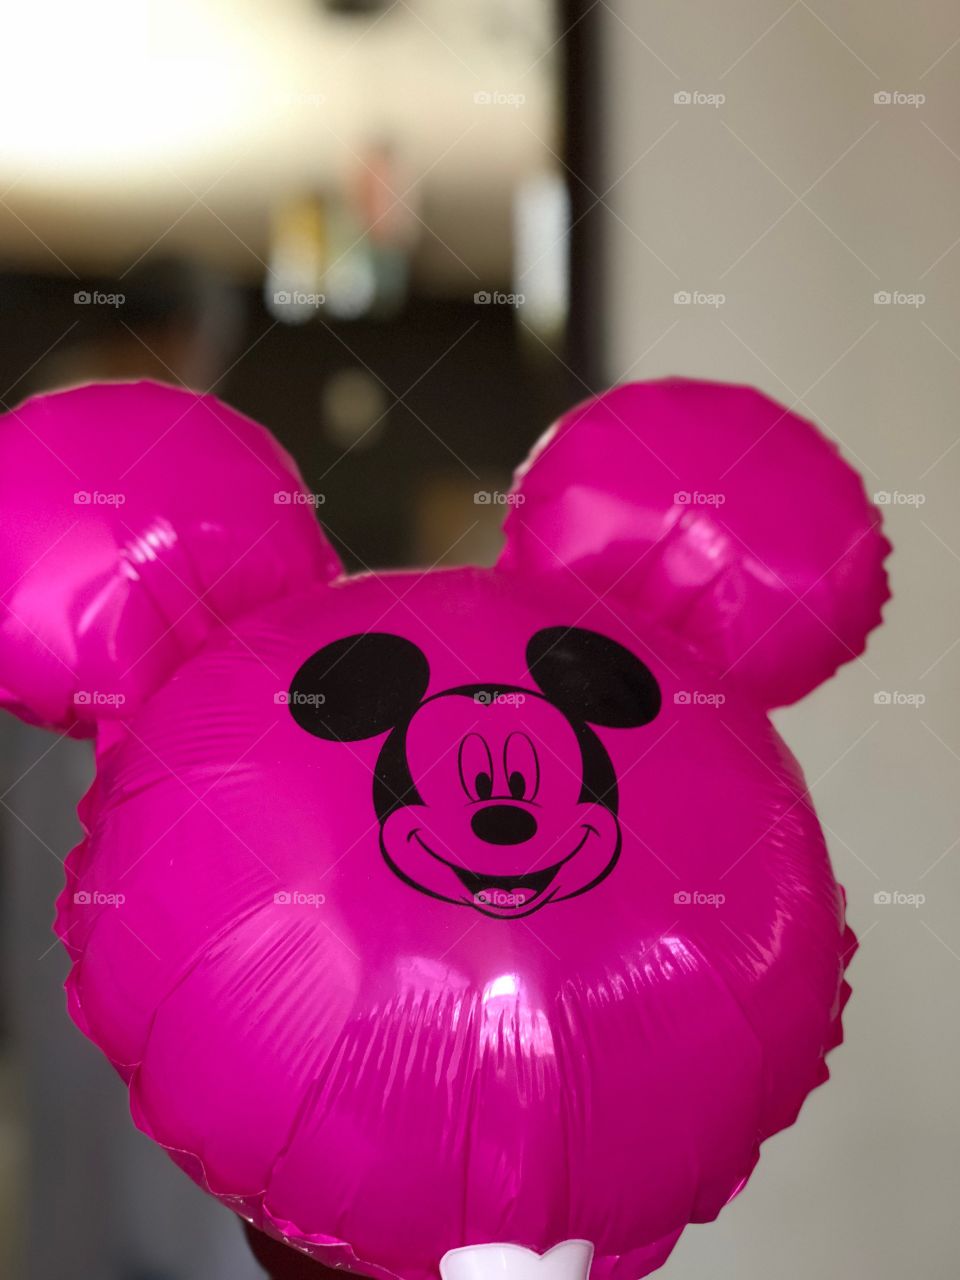 Mickey Mouse Balloon 🎈